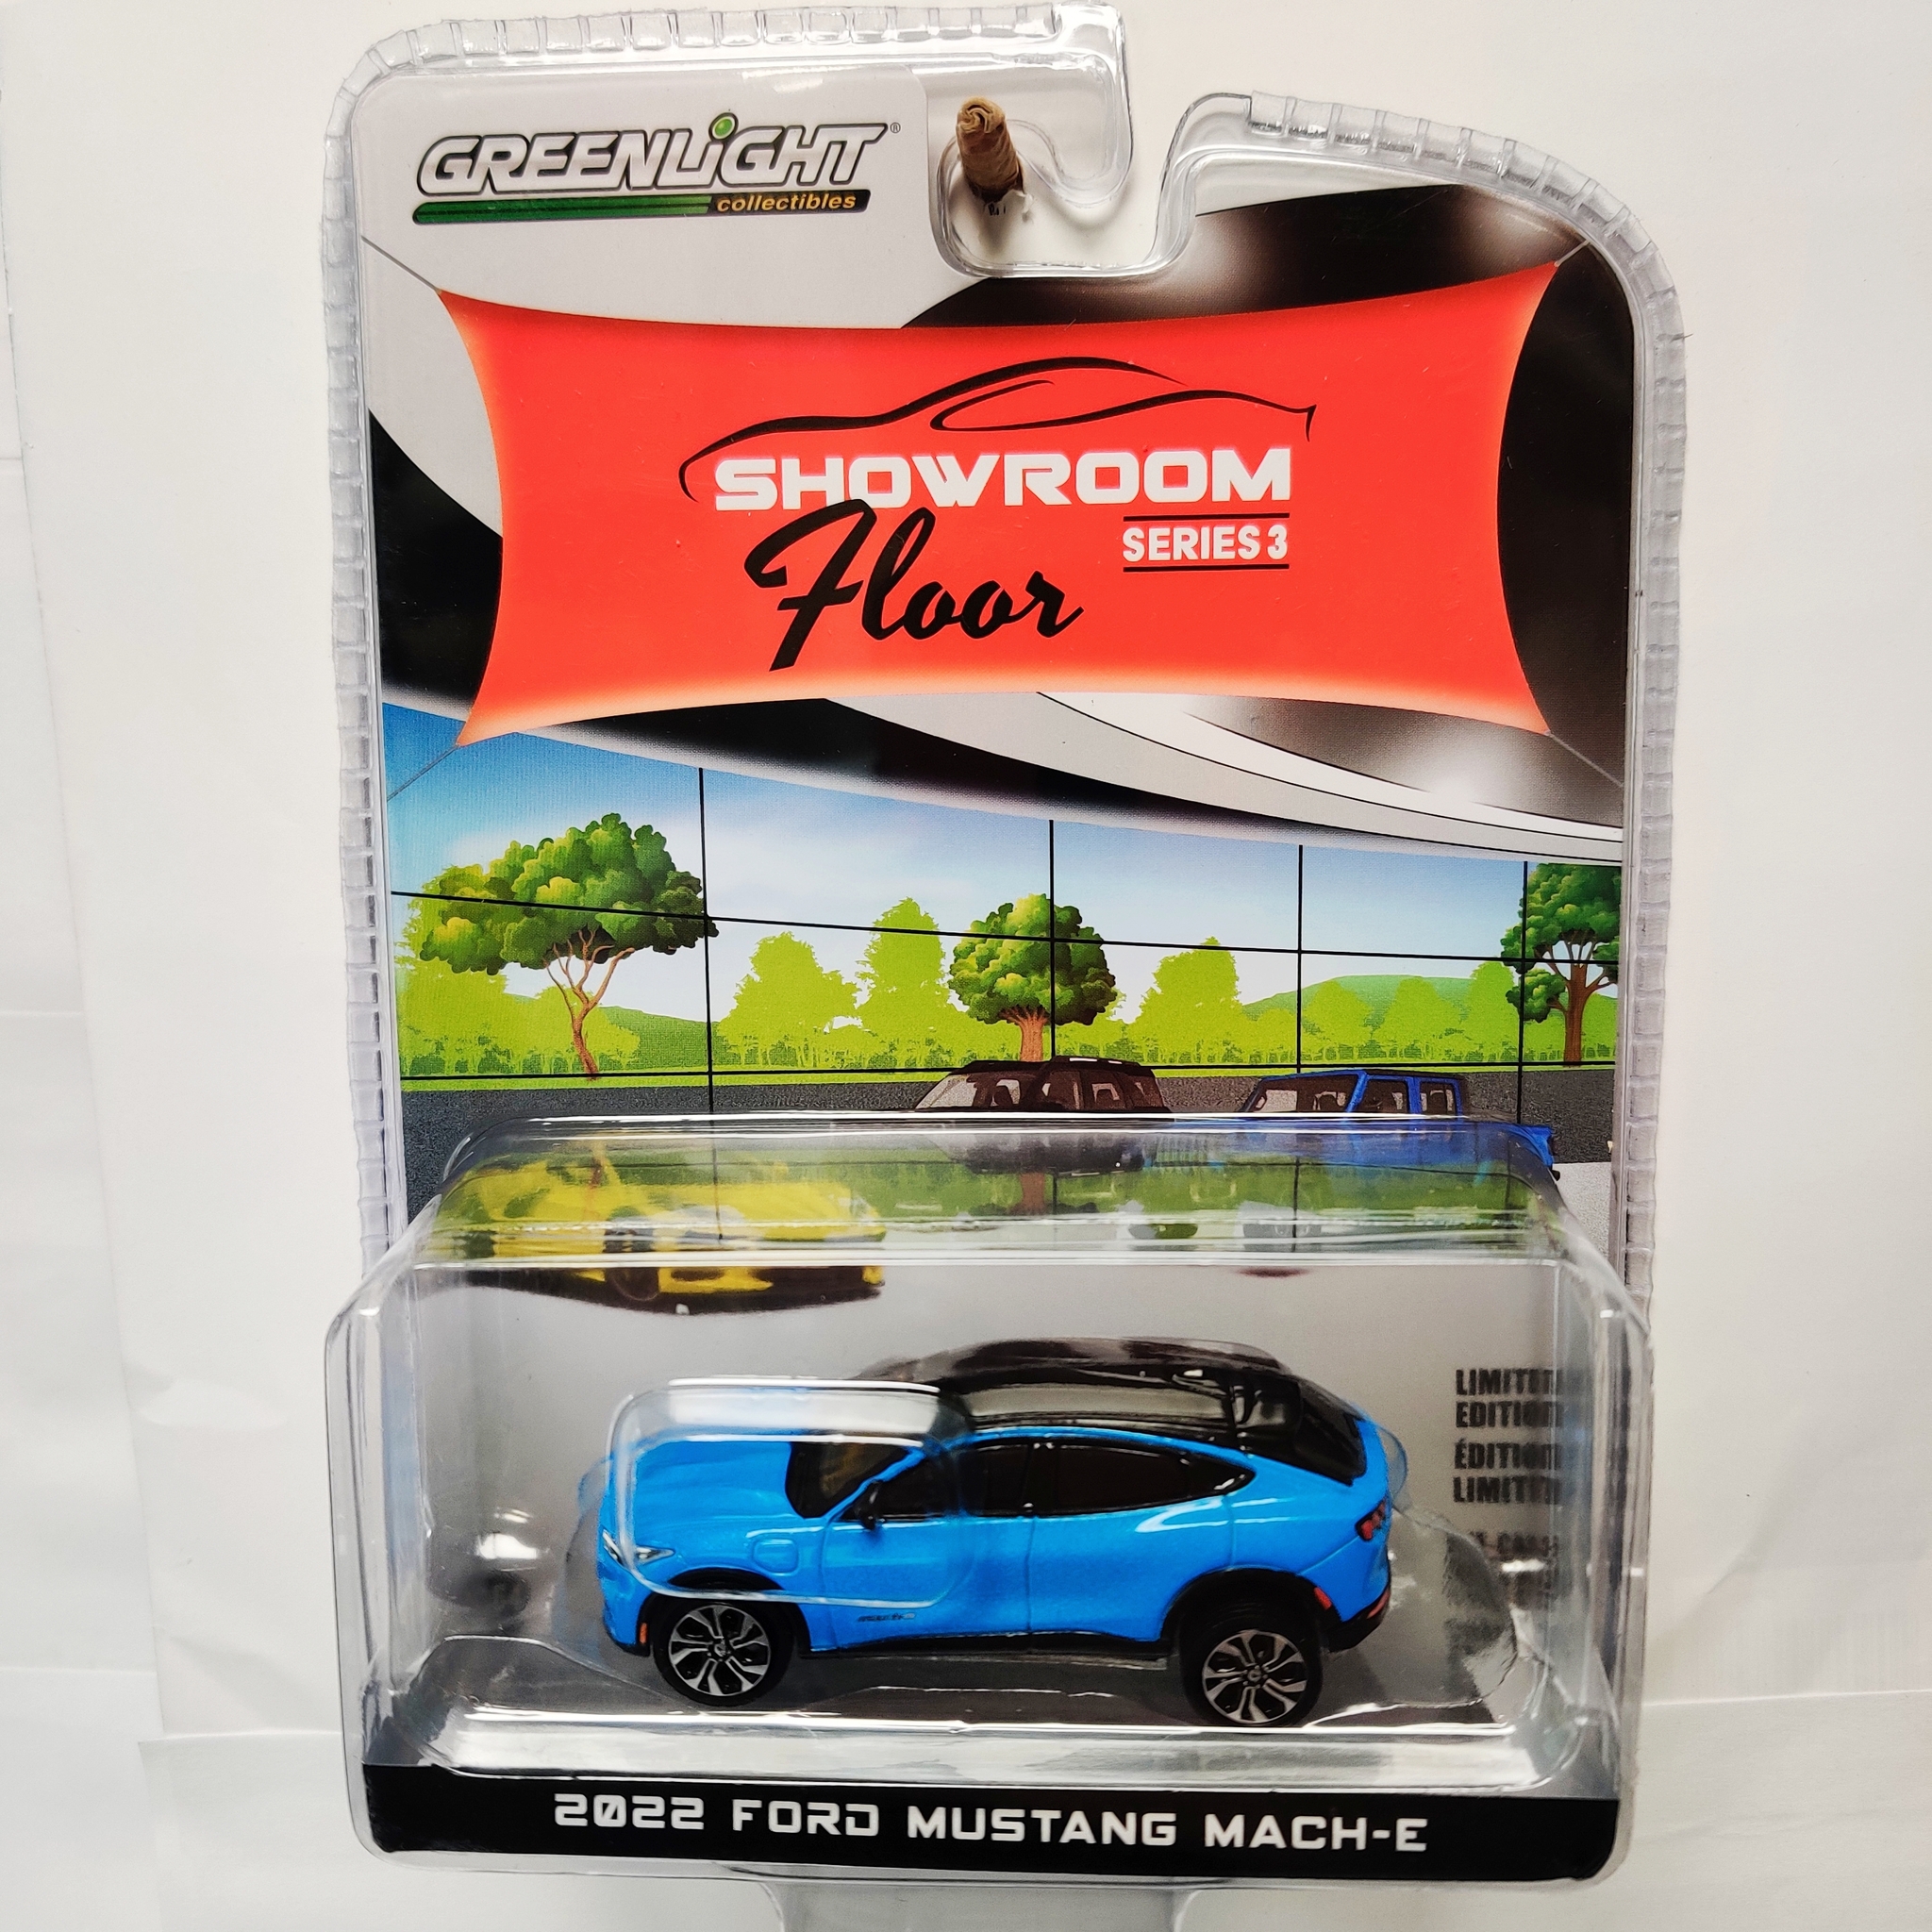 Skala 1/64 Greenlight, "Showroom Floor", Ford Mustang Mach-E 2022